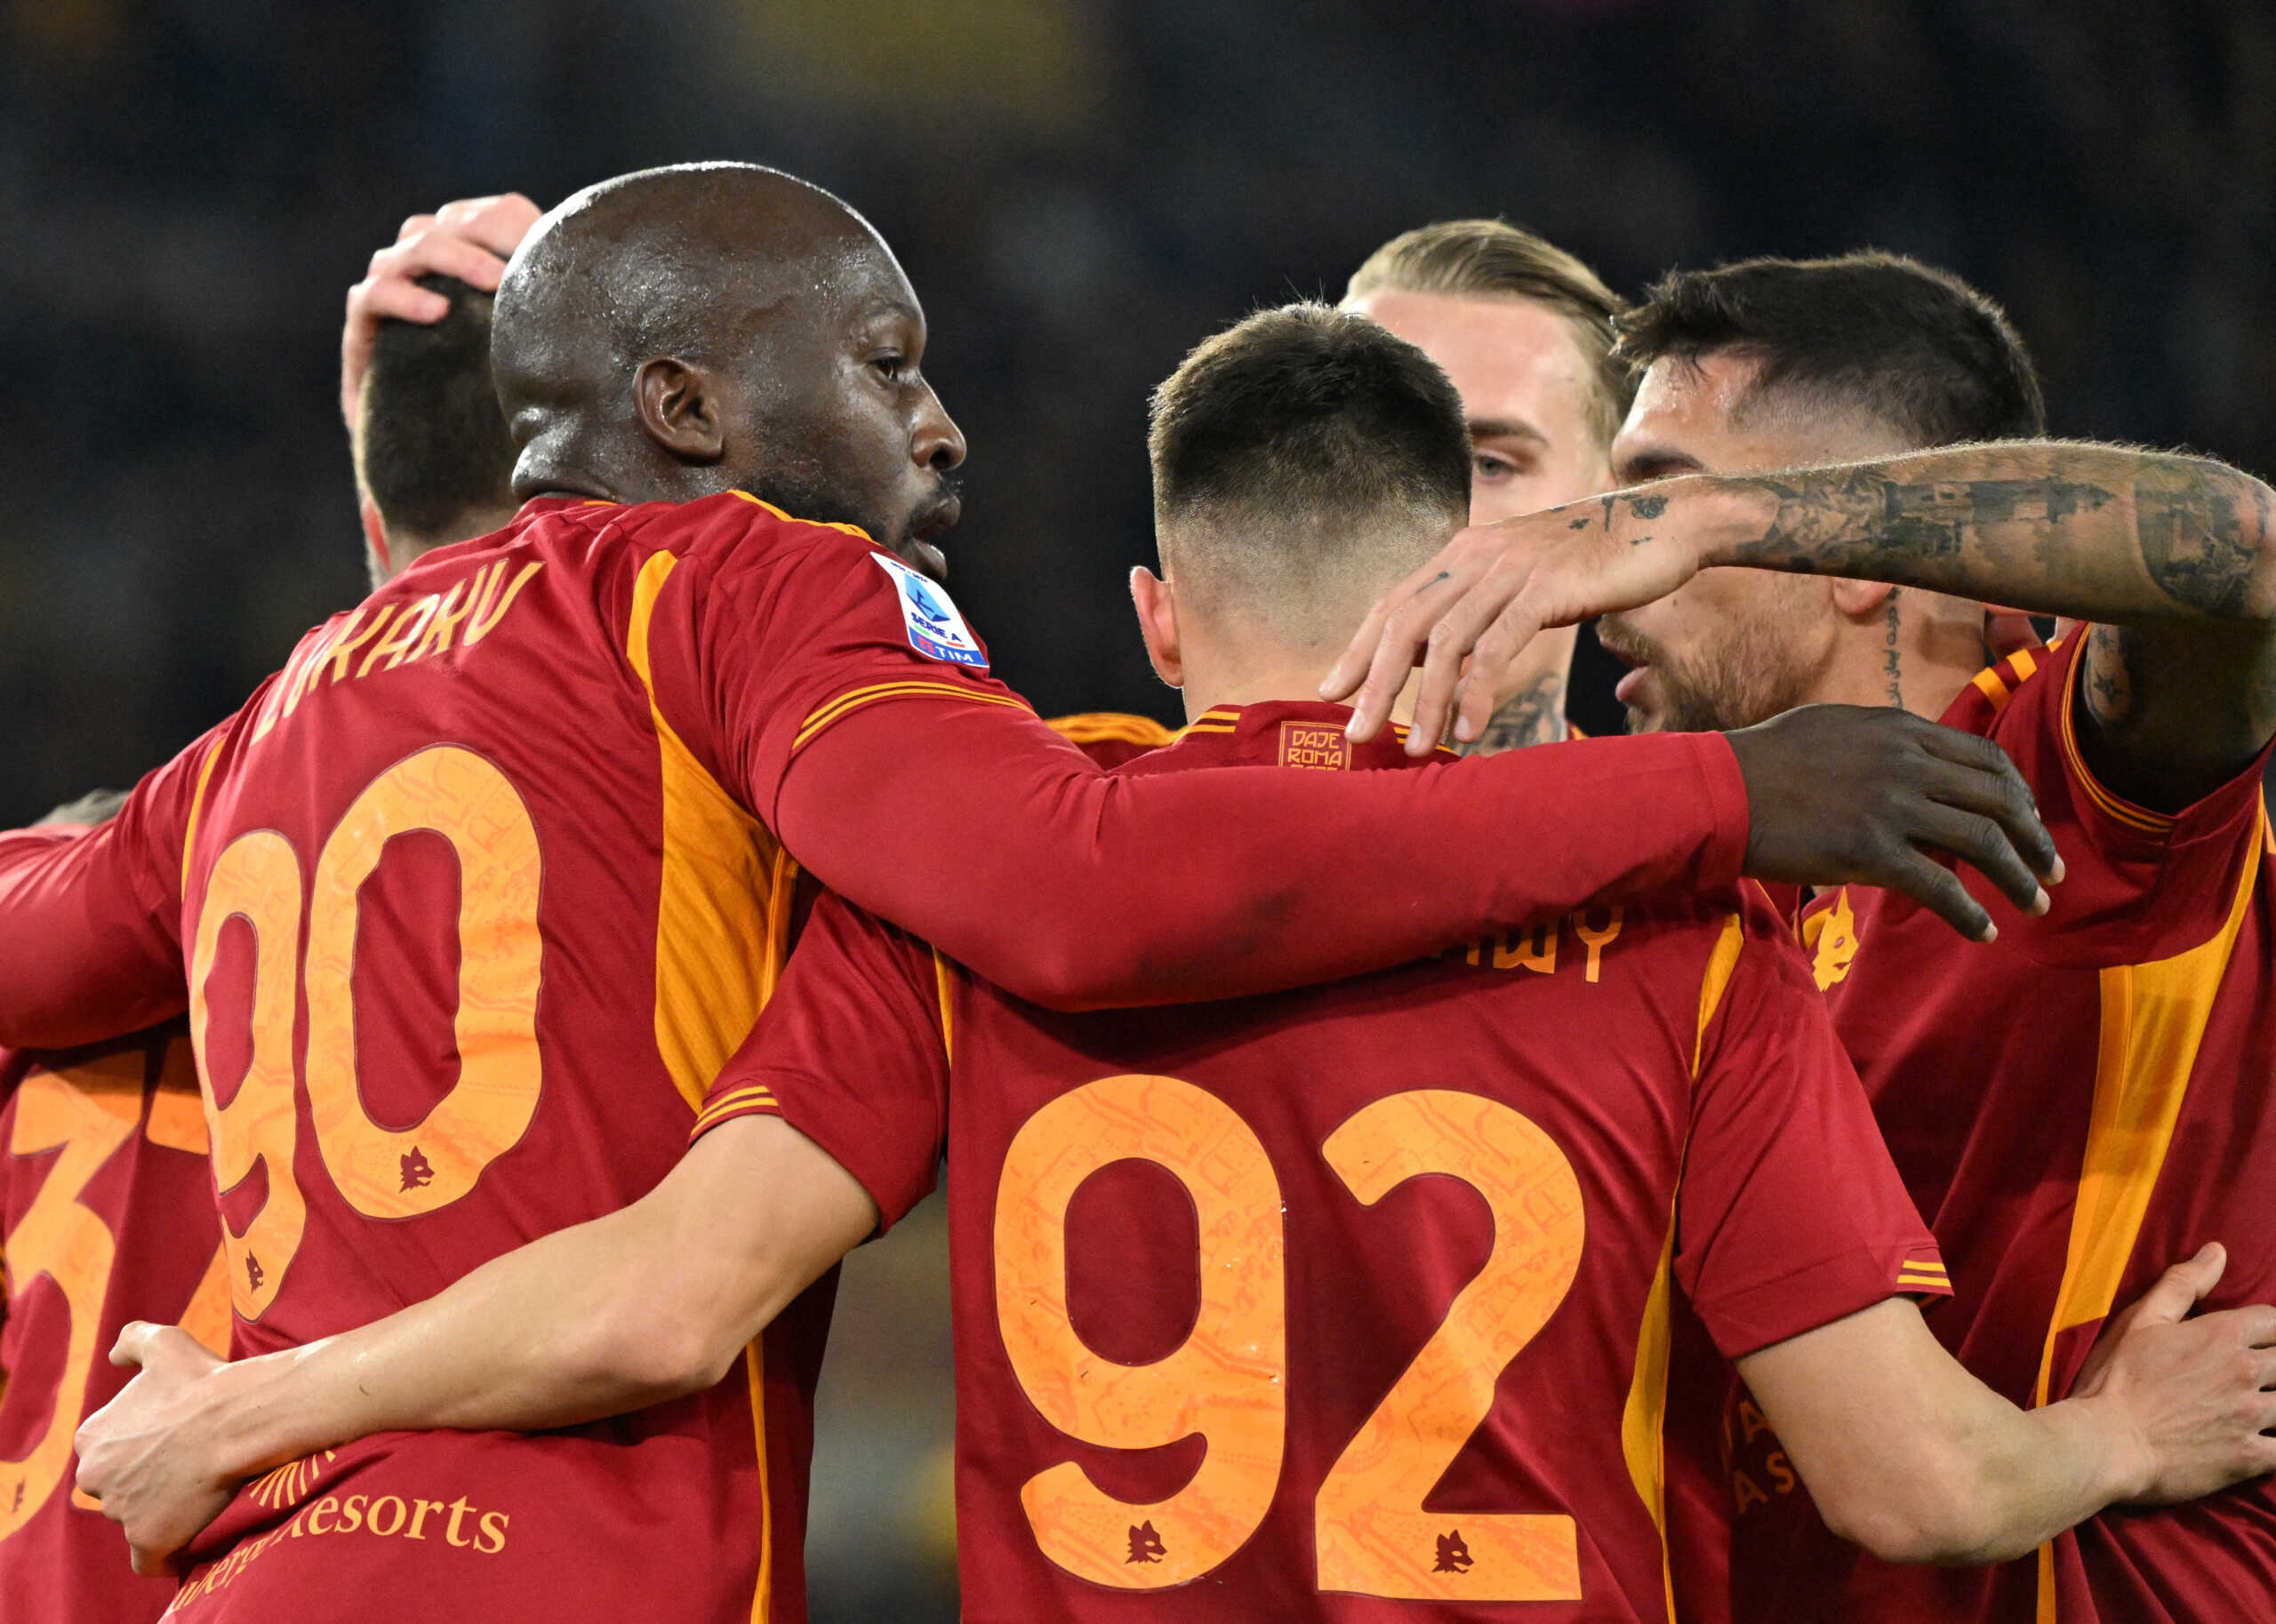 Ρόμα – Κάλιαρι 4-0: Ασταμάτητοι οι Ρωμαίοι στη Serie A με τον Ντε Ρόσι στον πάγκο